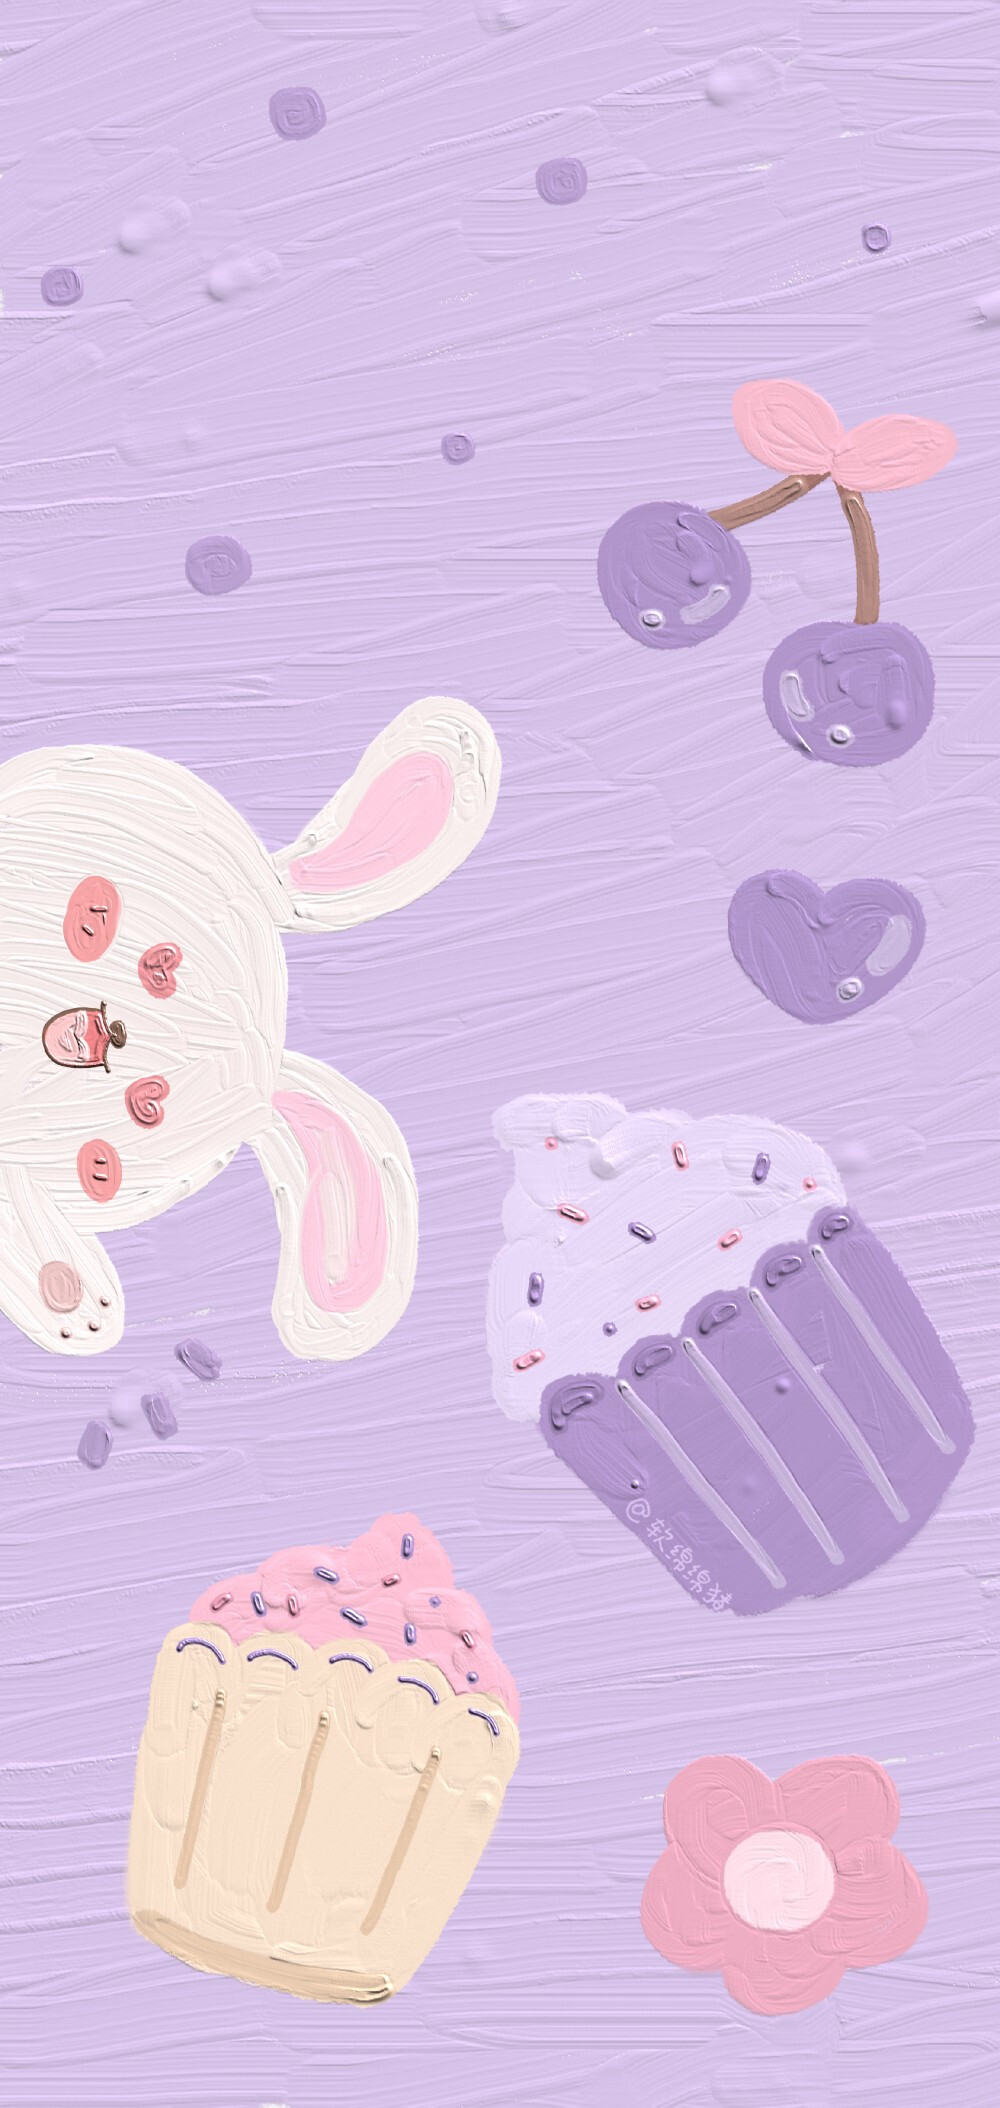 少女心可可爱爱软萌油画壁纸紫色手绘小兔小熊超萌全屏壁纸仙女加关注